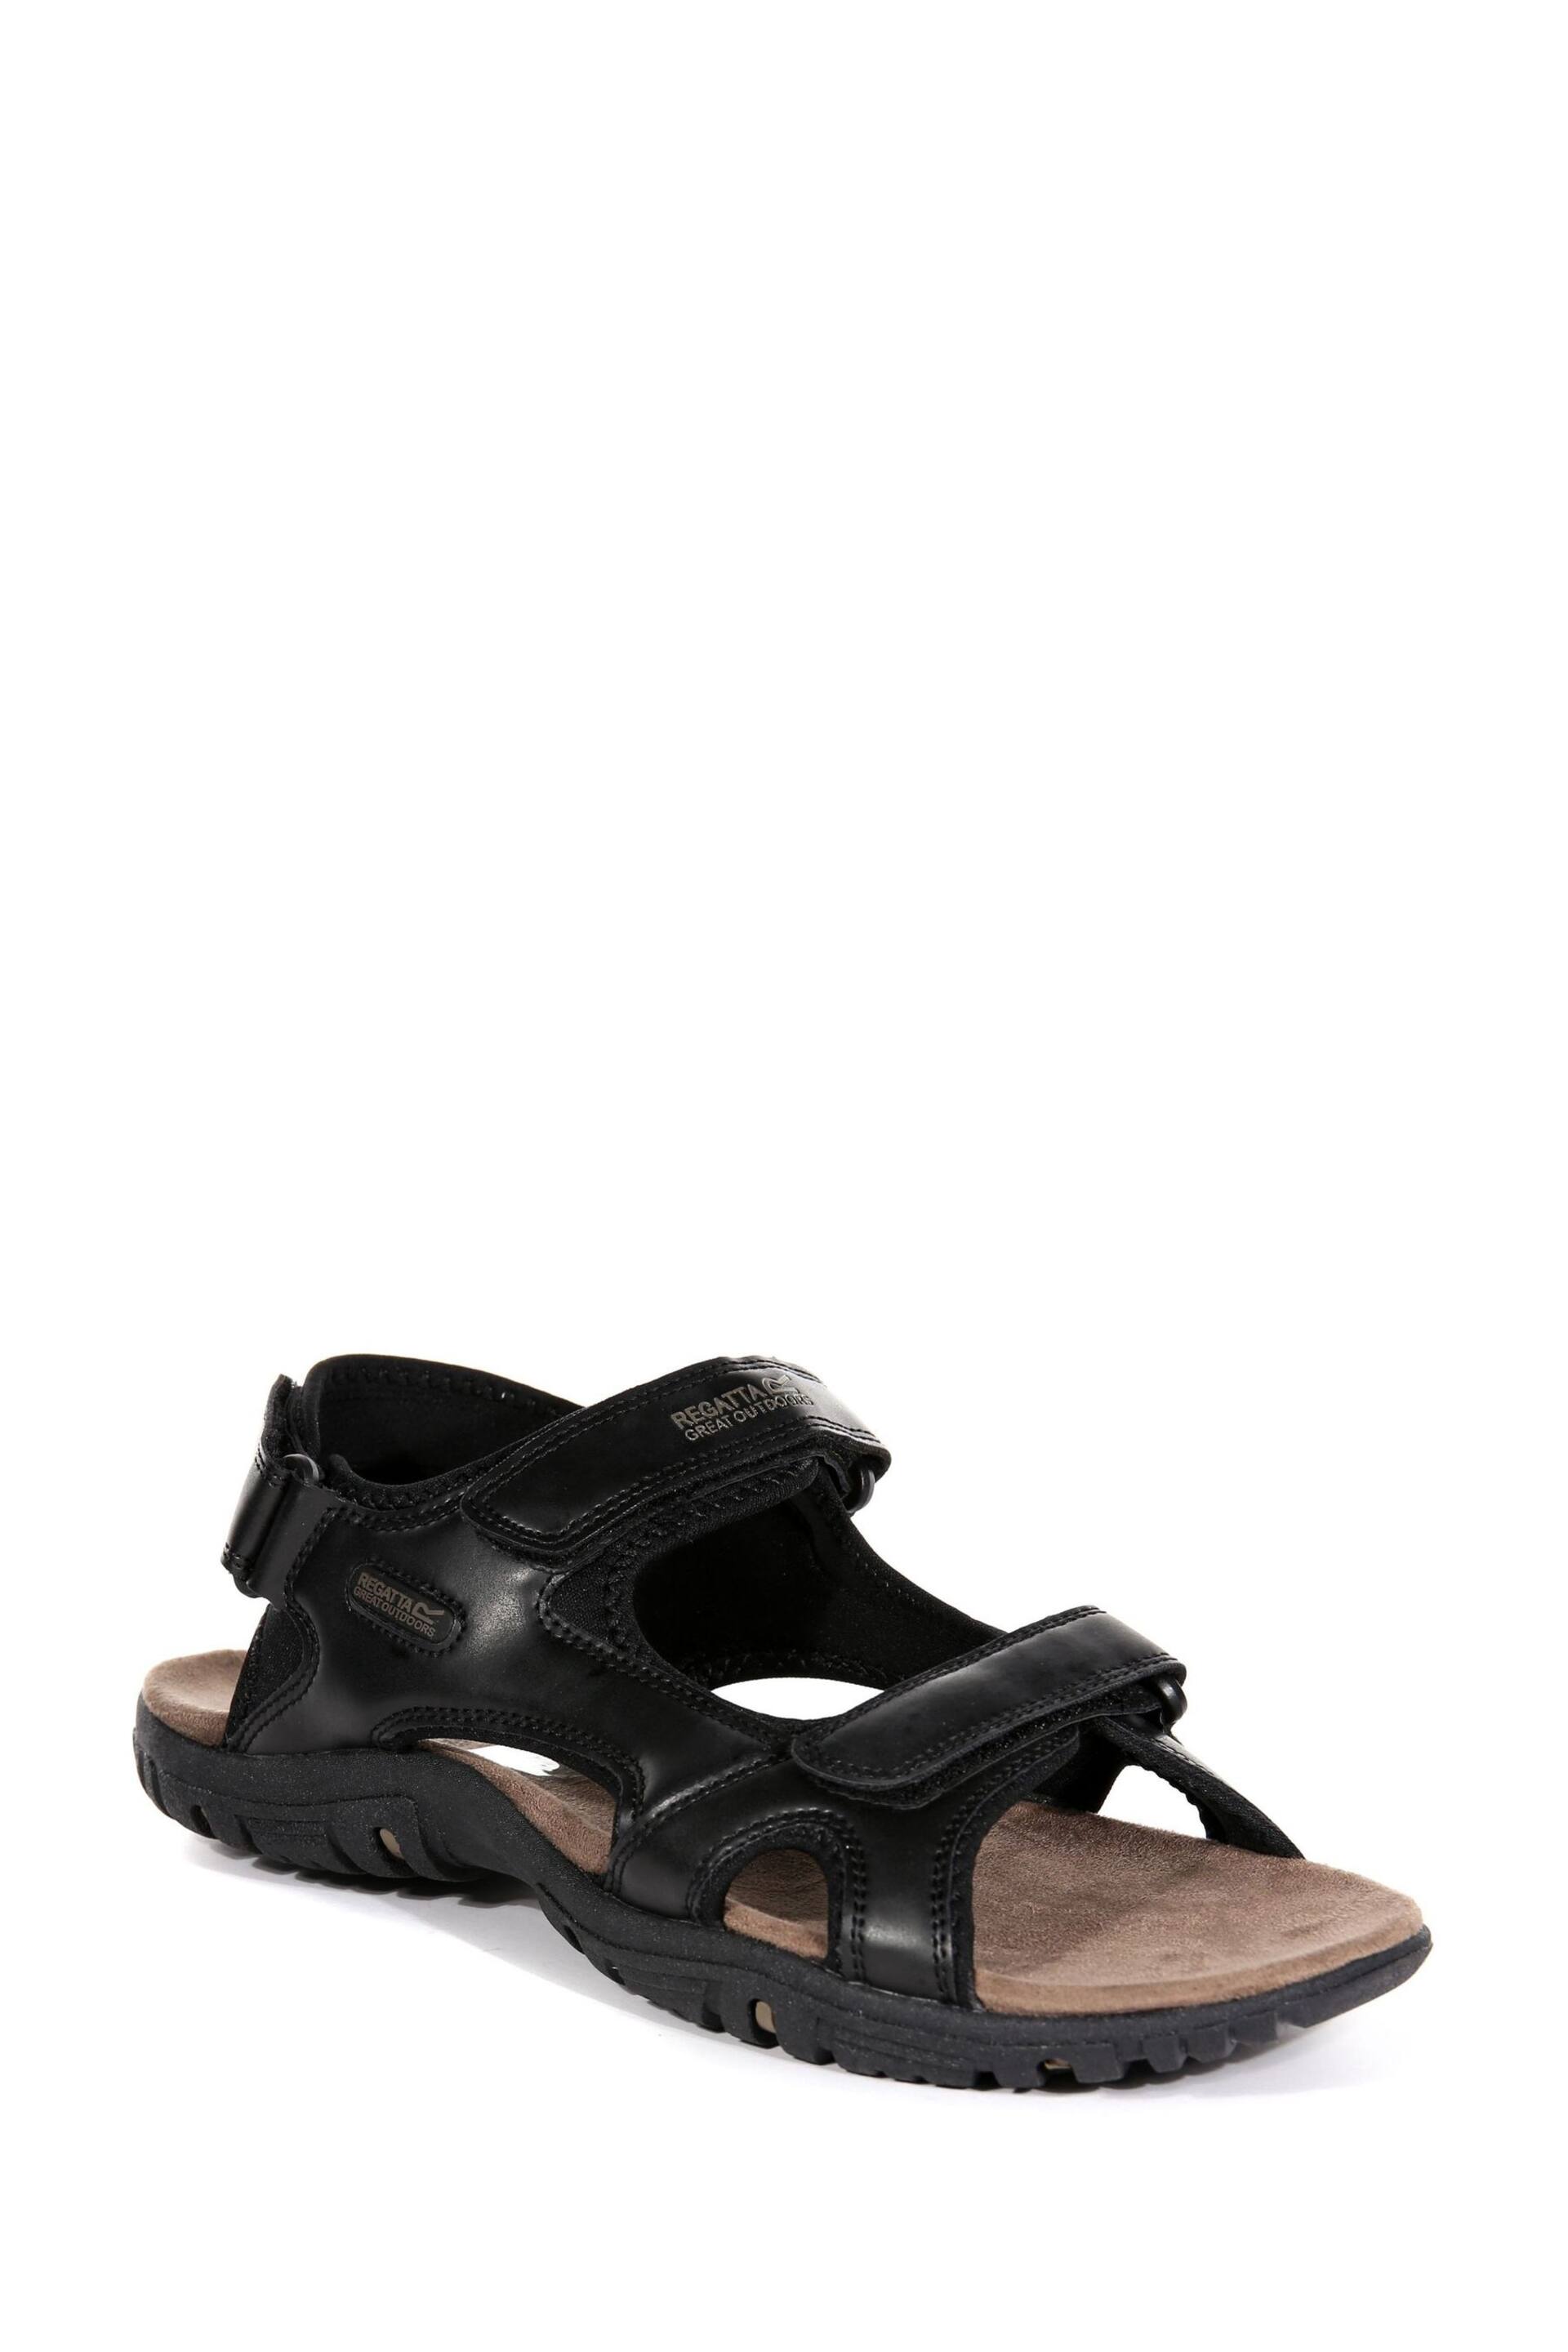 Regatta Black Comfort Fit Haris Sandals - Image 2 of 6